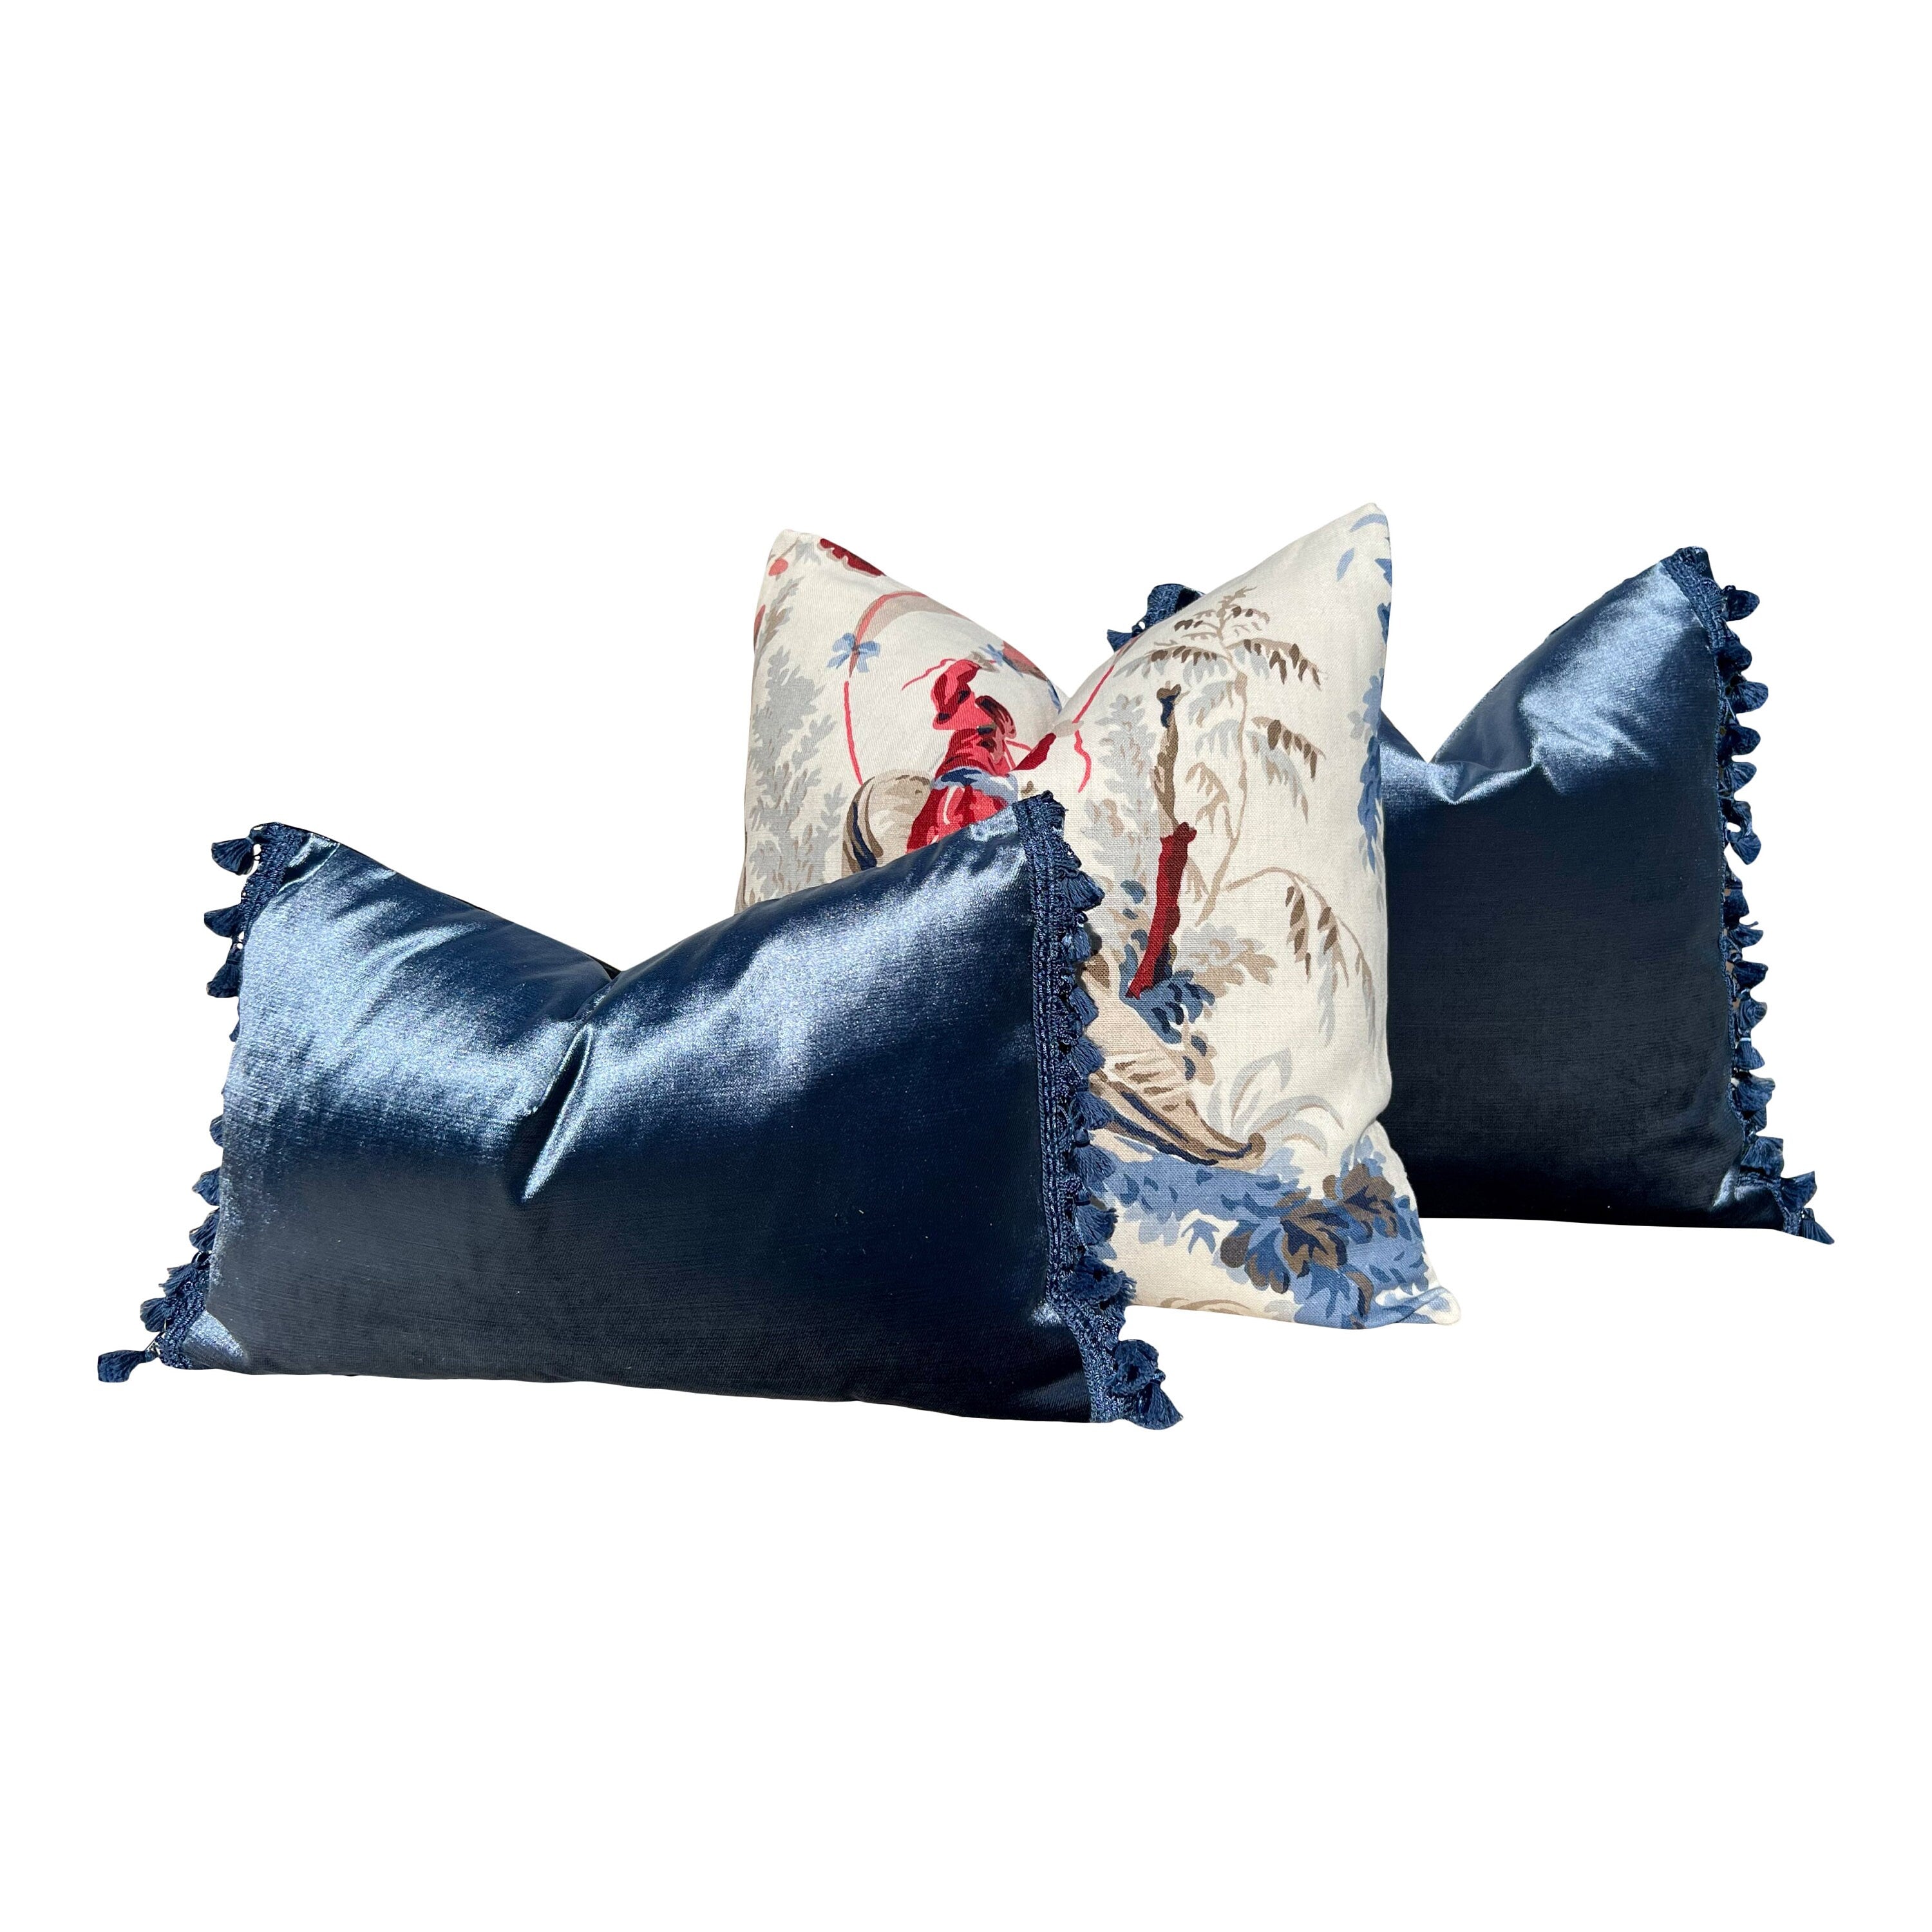 Designer Velvet Pillow in Deep Blue Color with Tassl Trim. Designer Velvet Pillows, High End Pillows, Accent Lumbar Pillow Velvet Shams